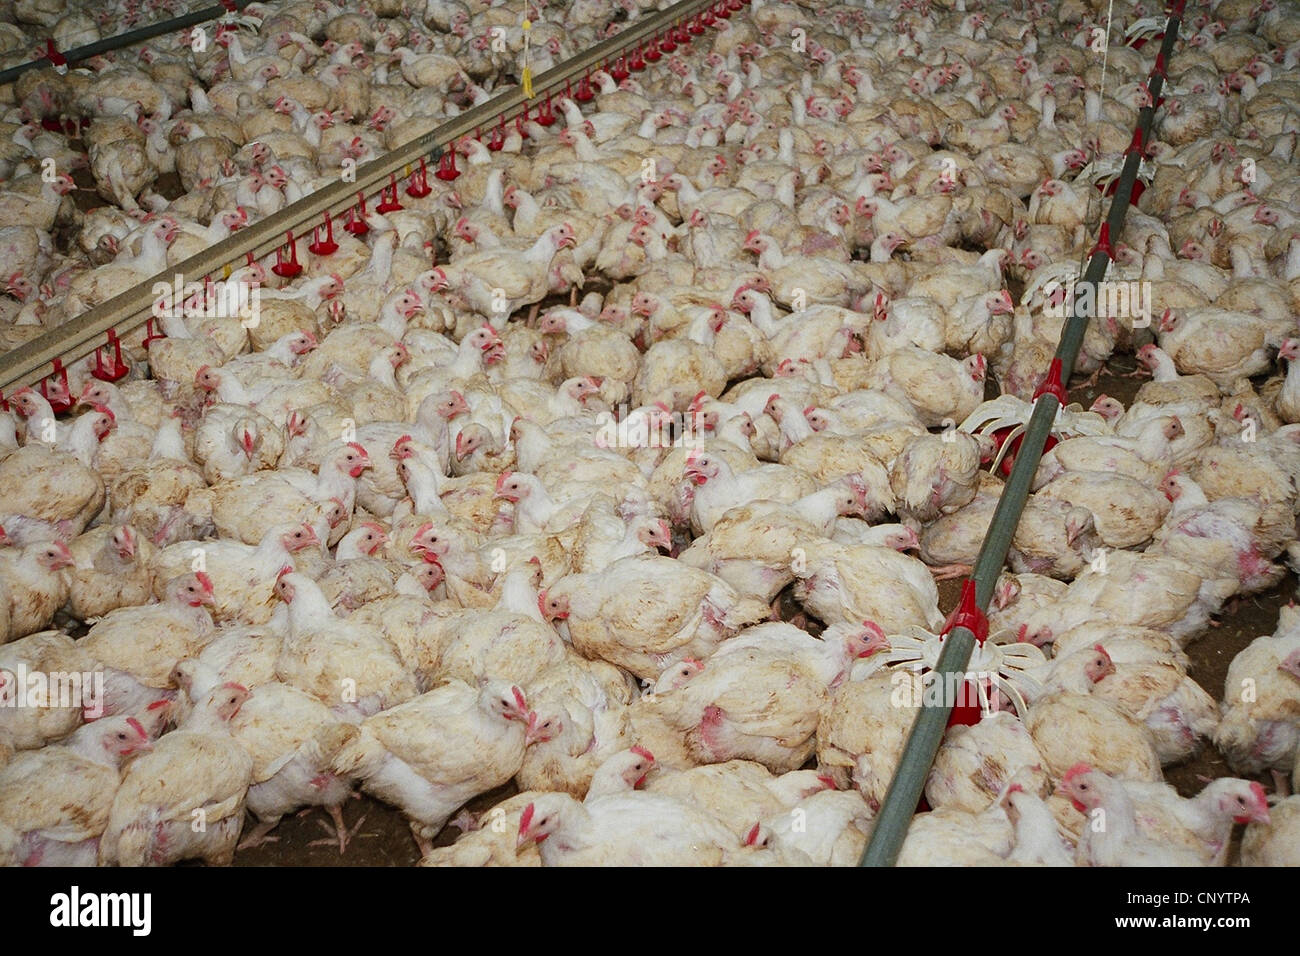 Galli e galline (Gallus gallus f. domestica), migliaia di polli da tavola bloccati insieme in una casa della gallina, Germania Foto Stock